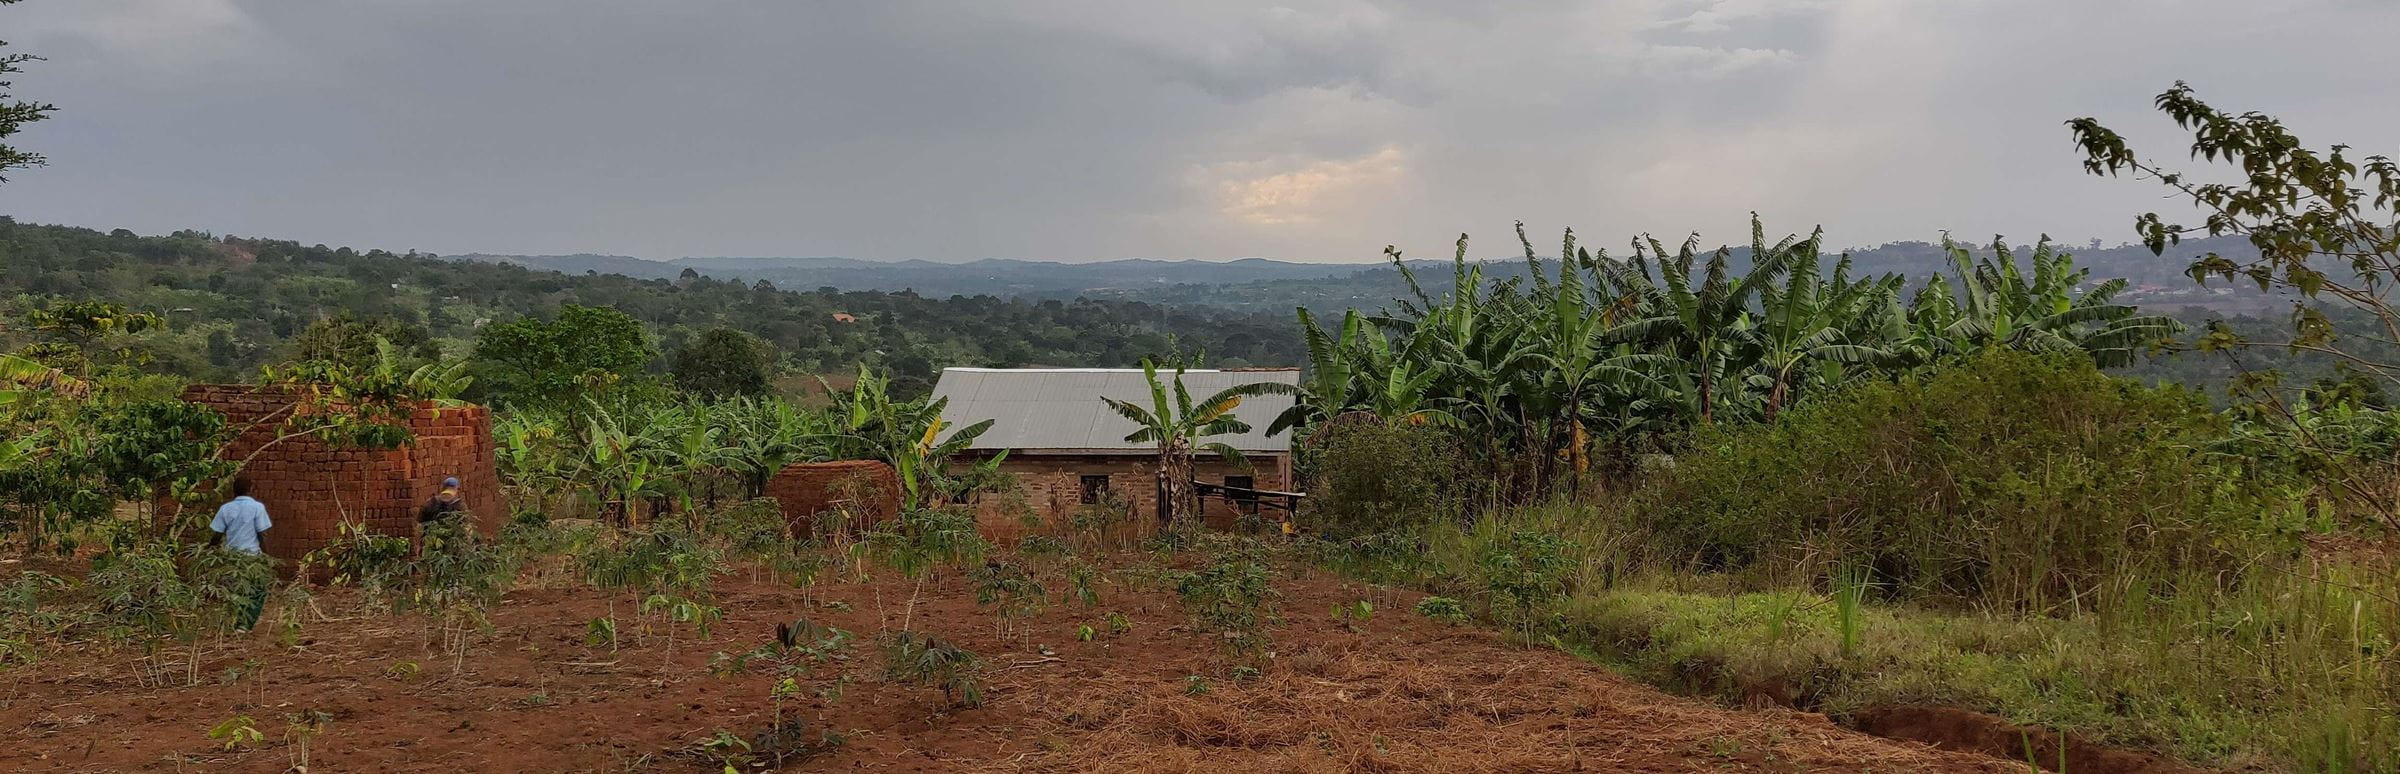 Reportage "Uganda: Farmschulen"; Foto:  Gebäude, dahinter Blick auf die Landschaft, im Vordergrund landwirtschaftlich genutzte Fläche  (Quelle: Katharina Drzsiga / Kindernothilfe)